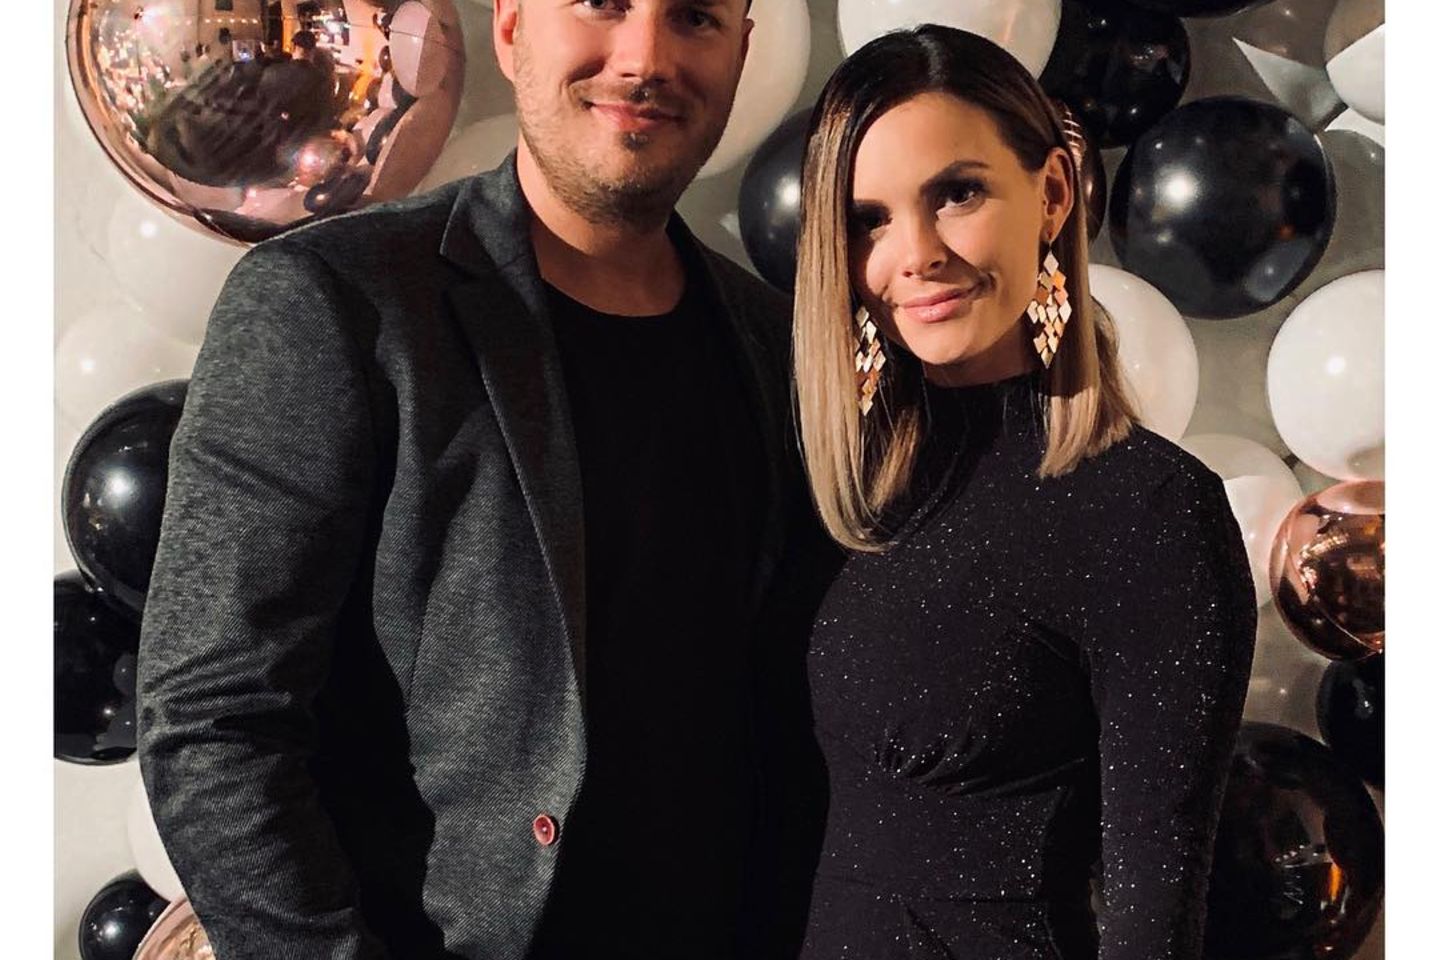 Denise Kappés und ihr neuer Freund Tim zeigen sich bei Instagram ganz offen als Paar.